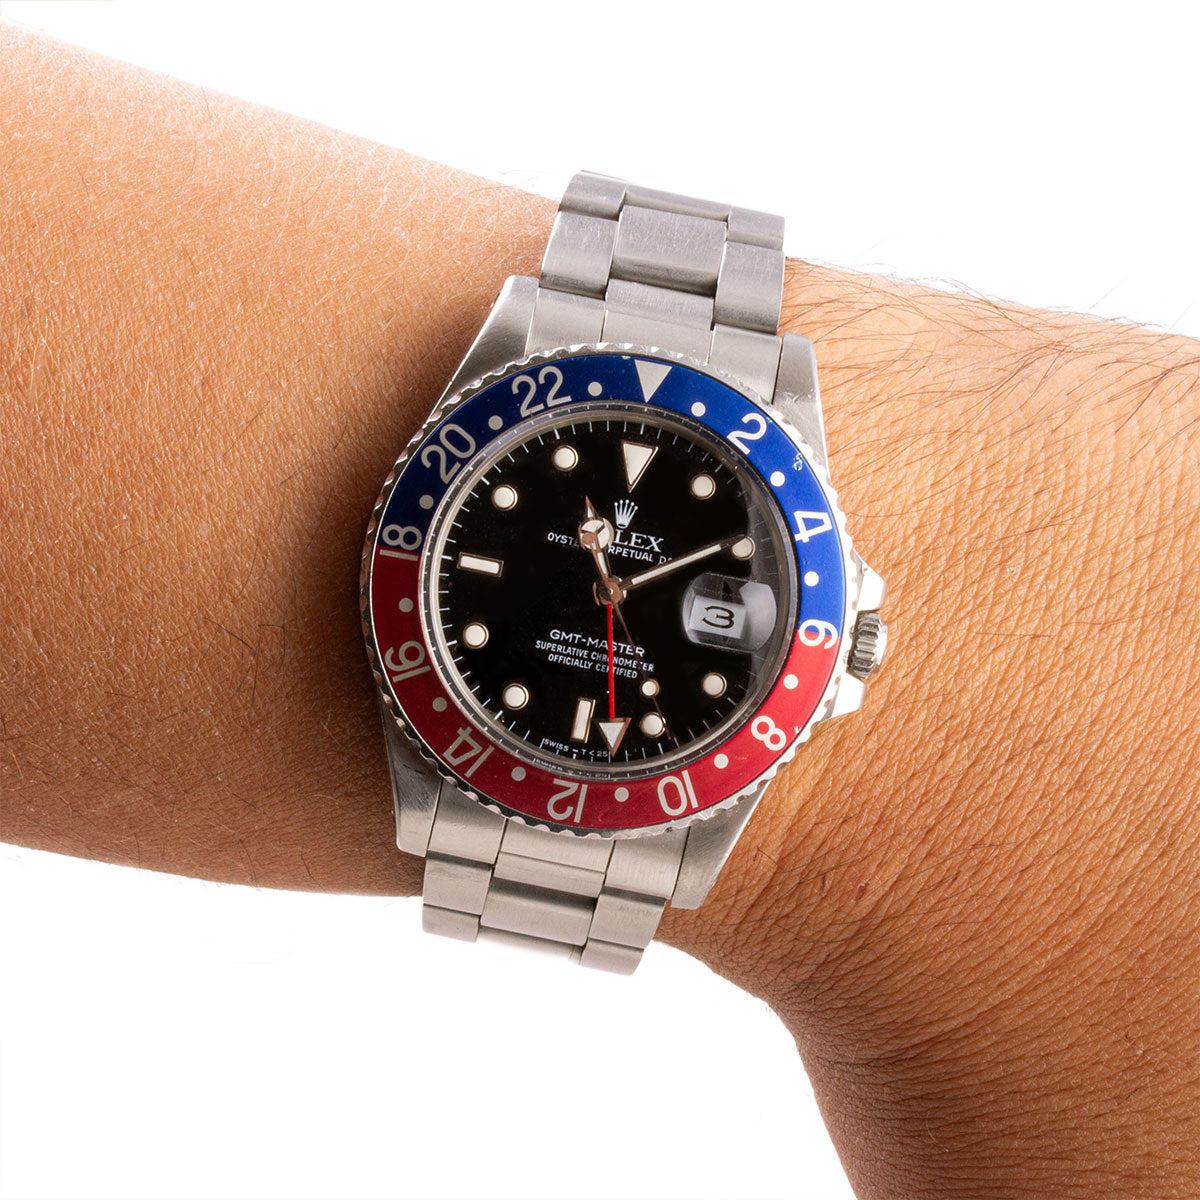 Second-hand watch - Rolex - GMT Master 16750 "Pepsi" - 14500€